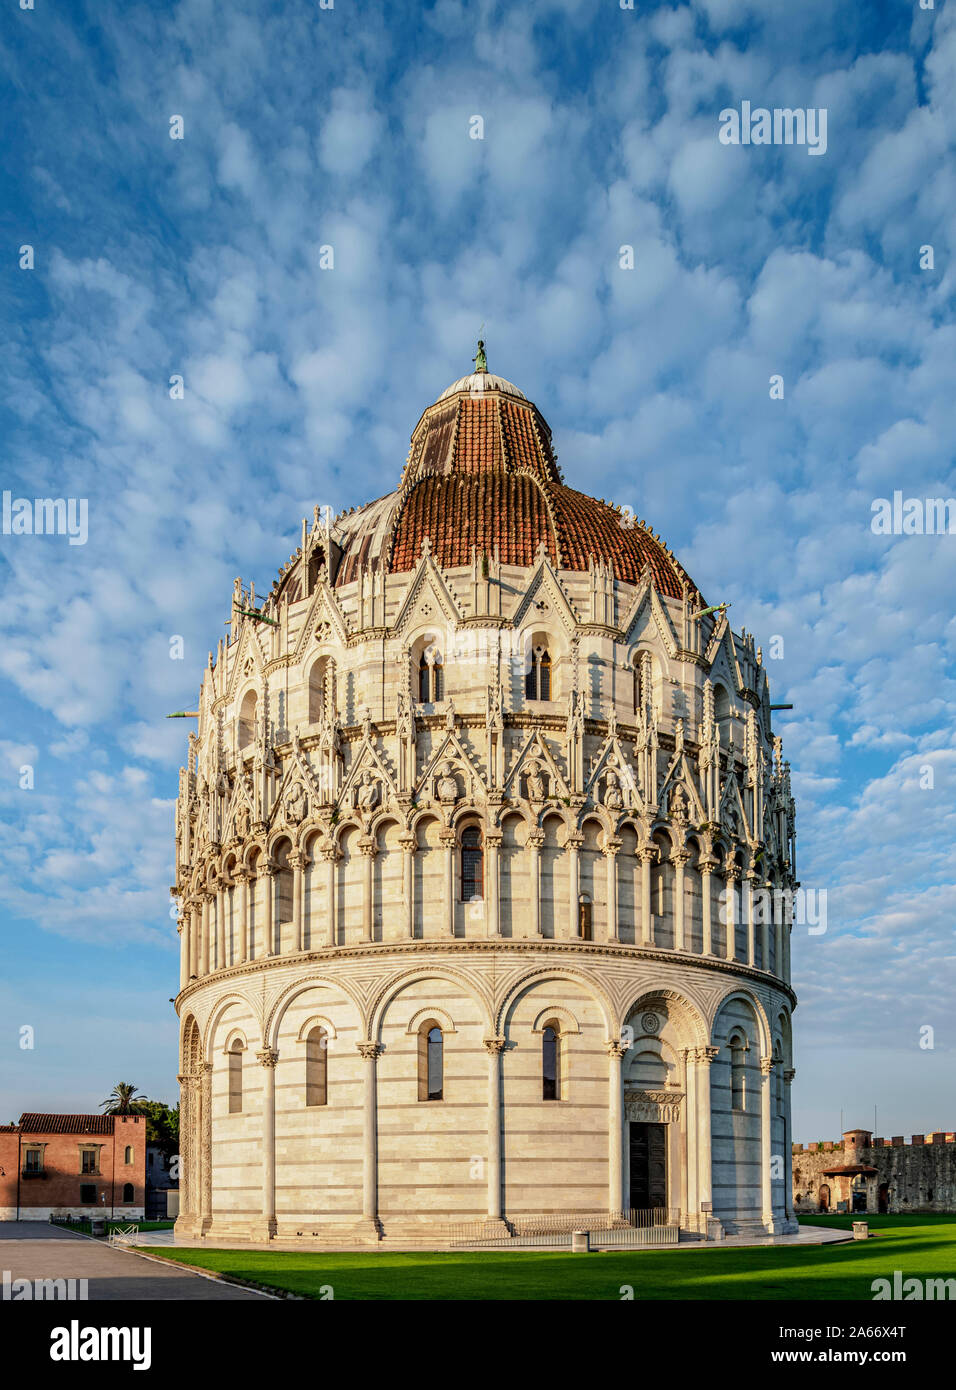 San Giovanni Baptistery, Piazza dei Miracoli, Pisa, Tuscany, Italy Stock Photo